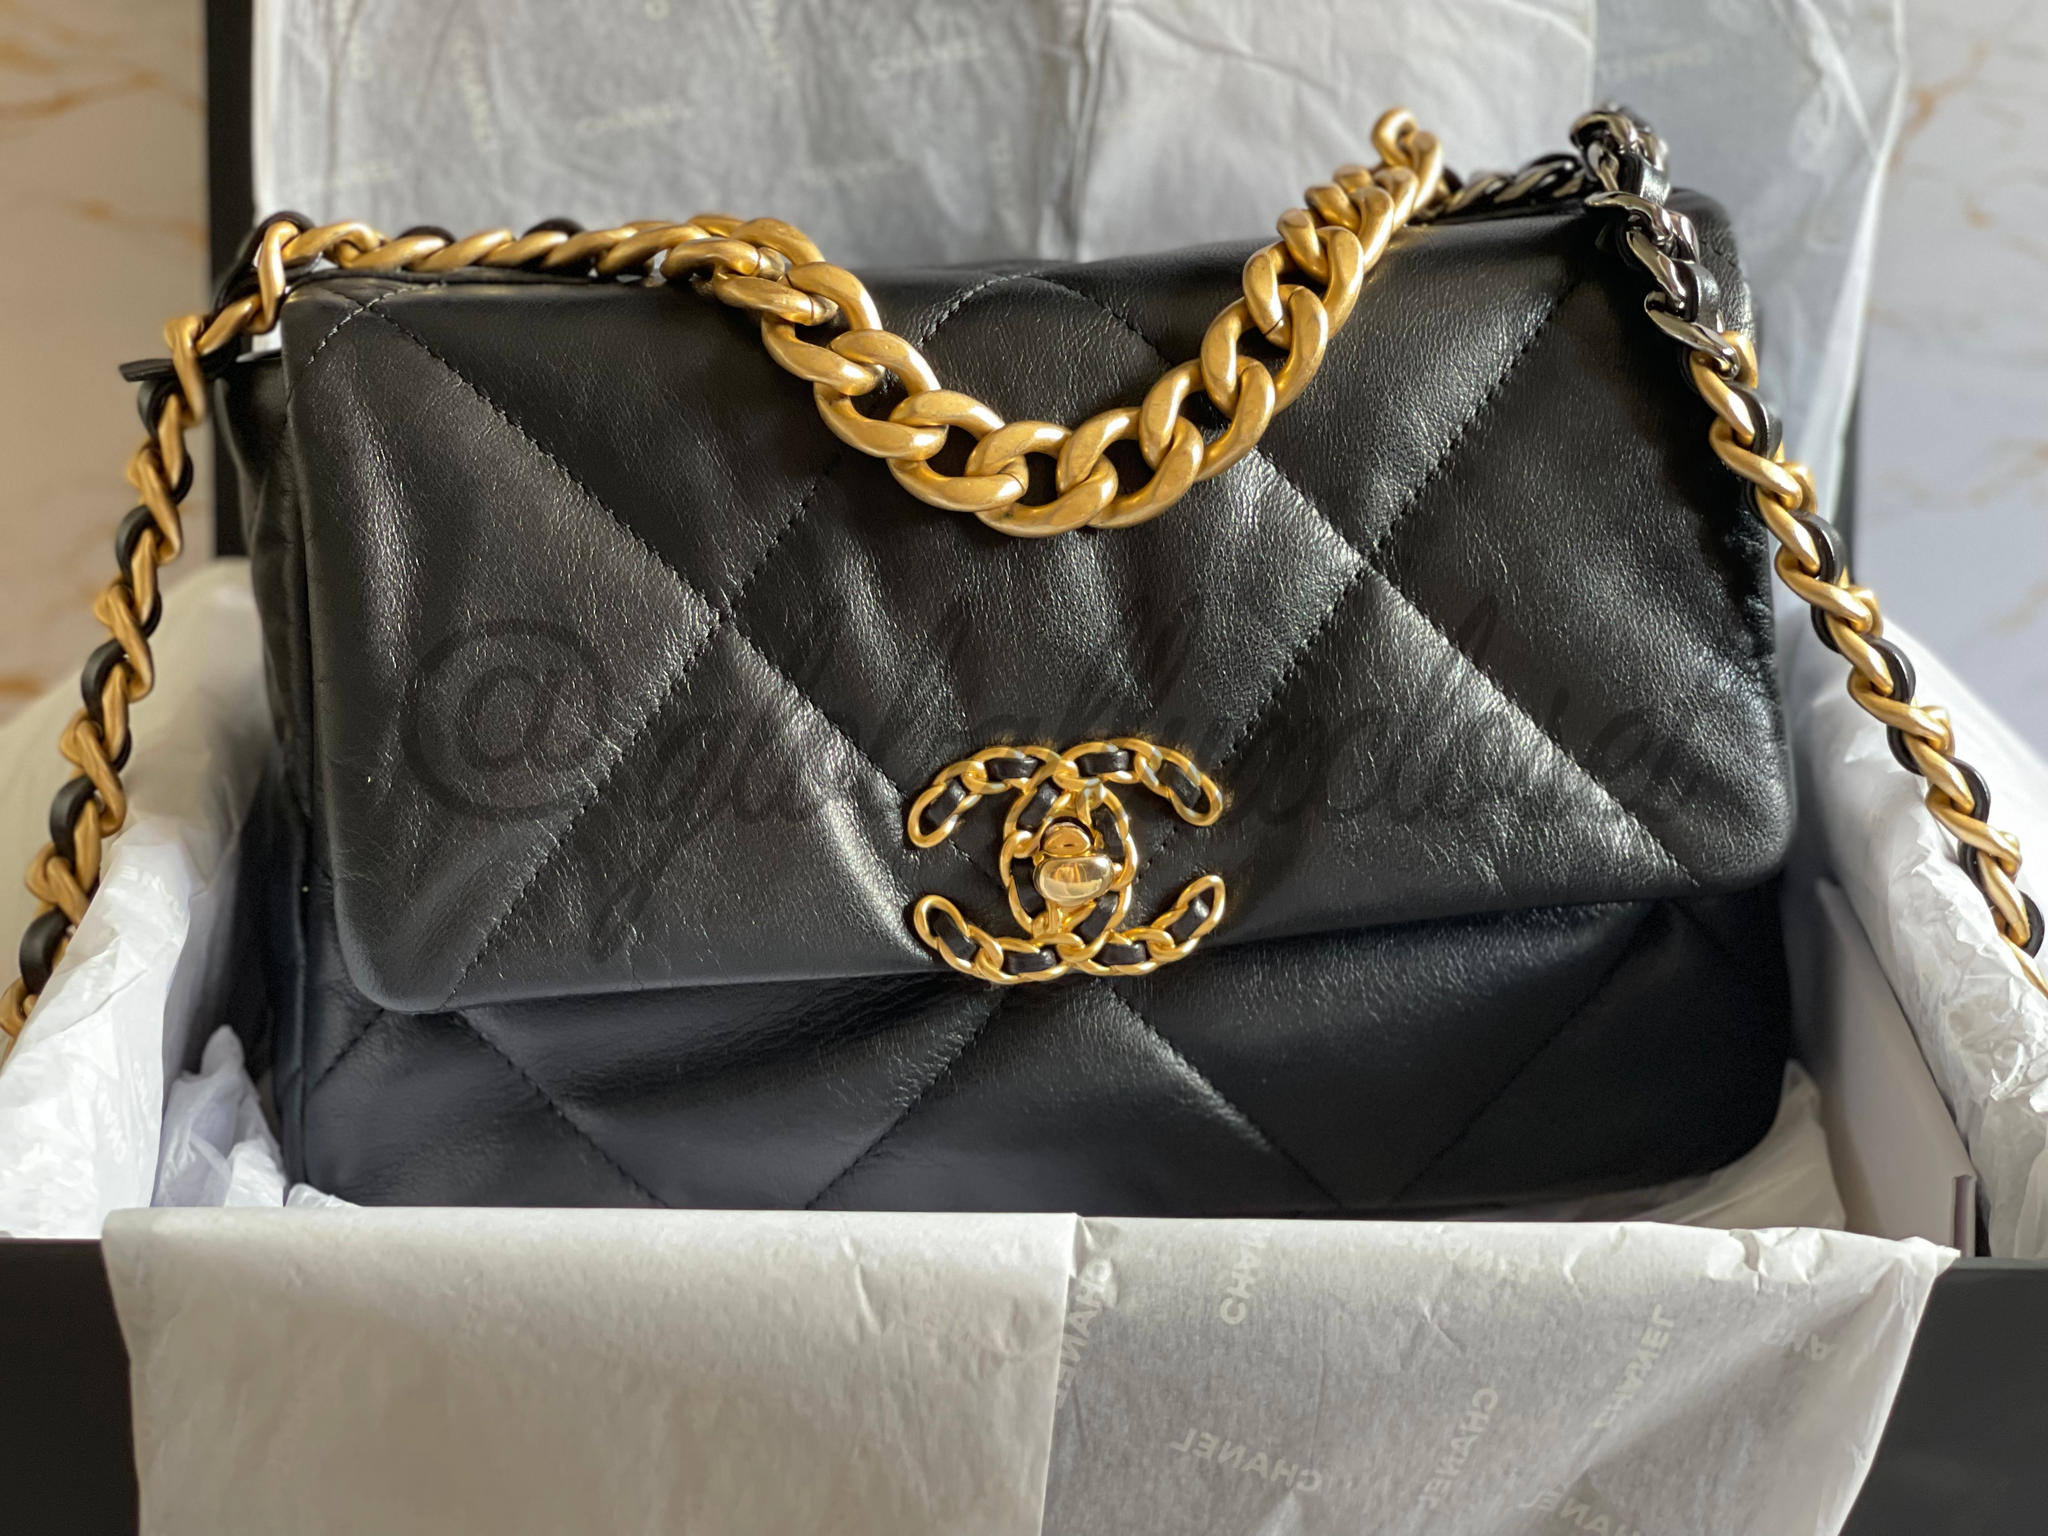 ⅕ΙSuitable for Chanel Chanel Womens bag bag 19 size flapbag bag 26 30 36cm  chain inner bile bag  Shopee Philippines